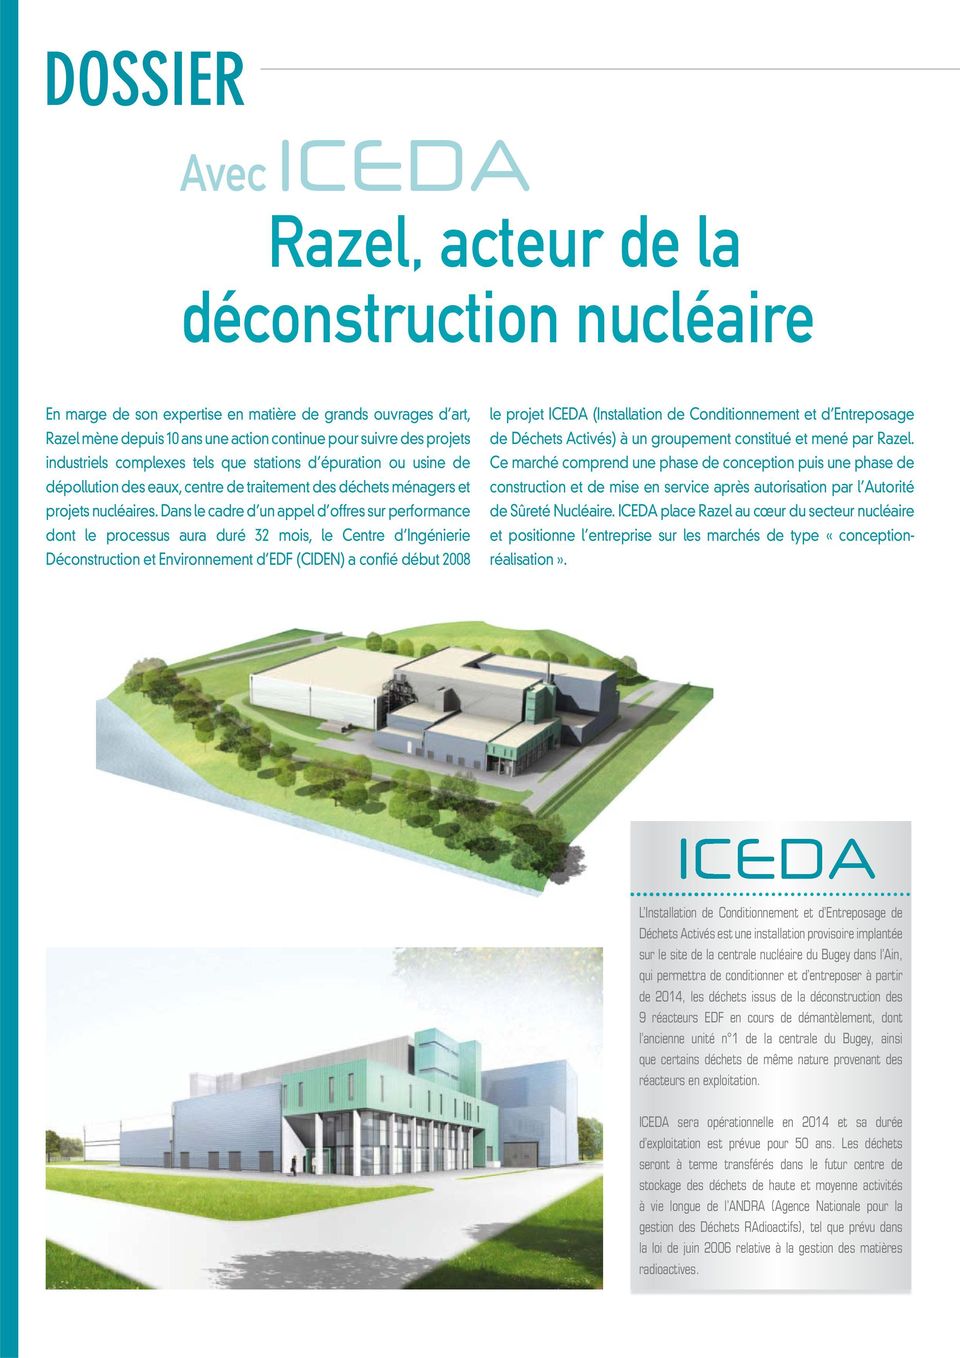 Dans le cadre d un appel d offres sur performance dont le processus aura duré 32 mois, le Centre d Ingénierie Déconstruction et Environnement d EDF (CIDEN) a confié début 2008 le projet ICEDA